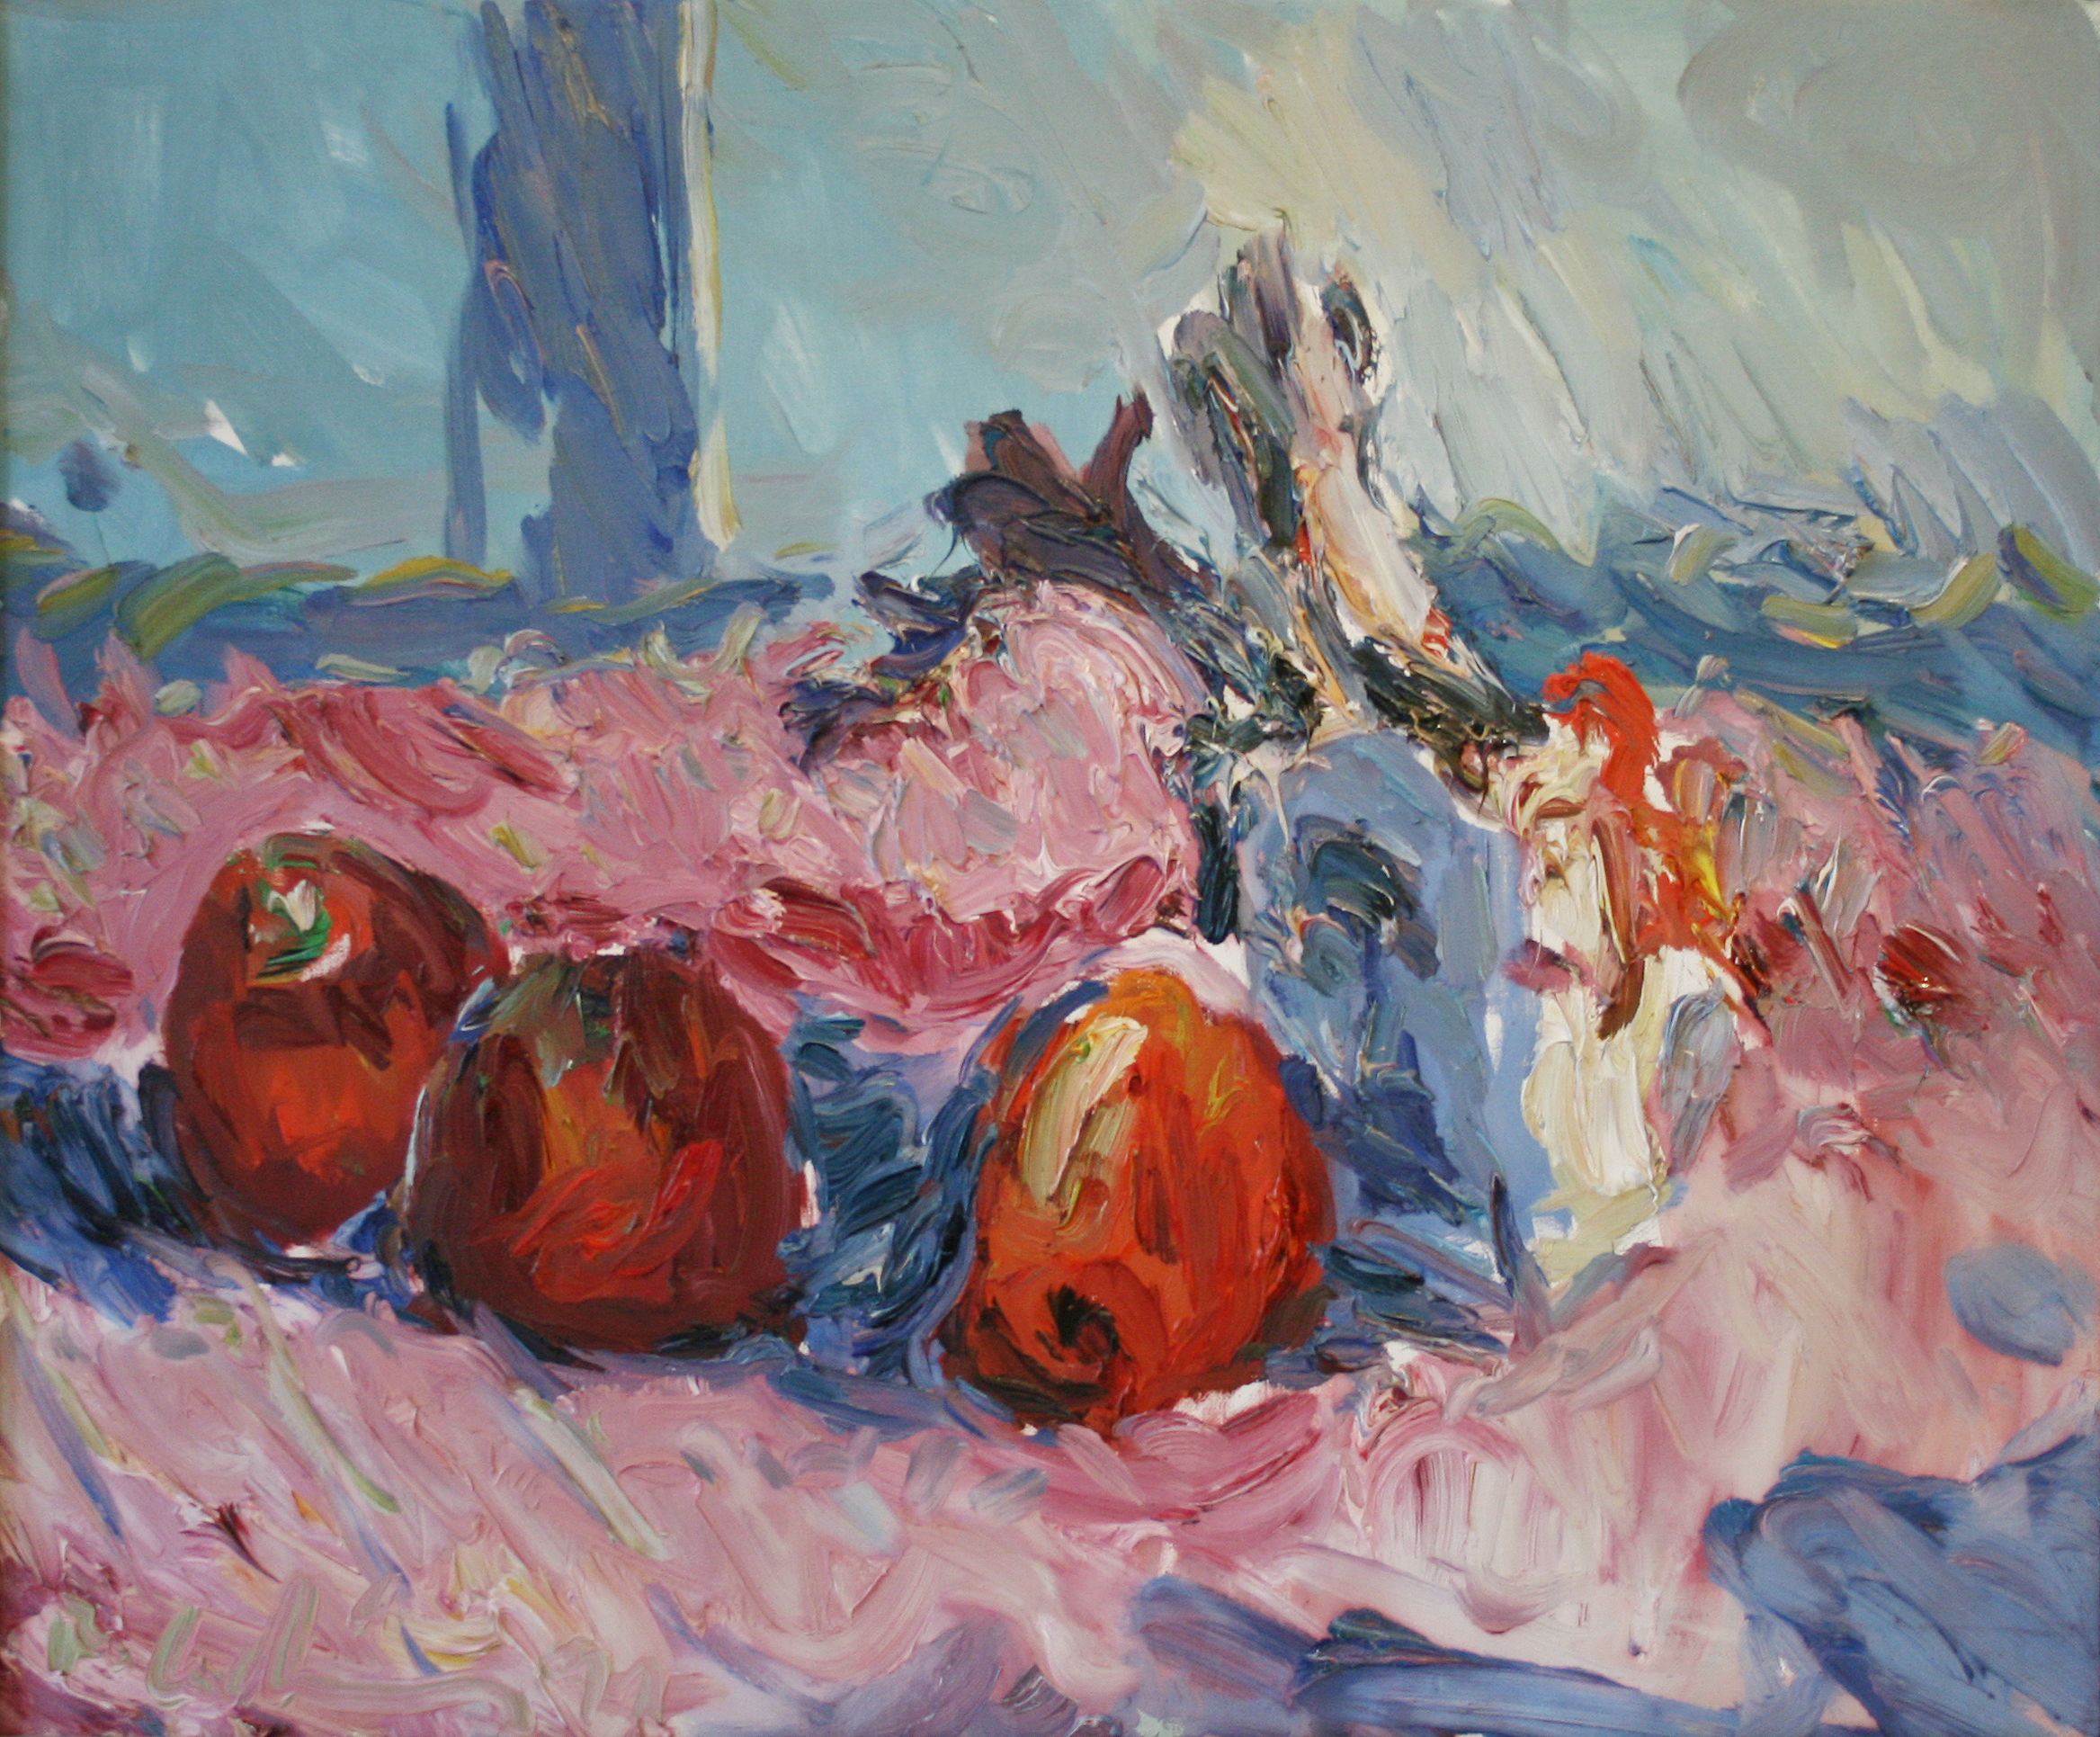 Roland Ladwig, Stillleben mit 3 roten Äpfeln, 1991, Öl auf Leinwand, 46 x 38,3 cm
